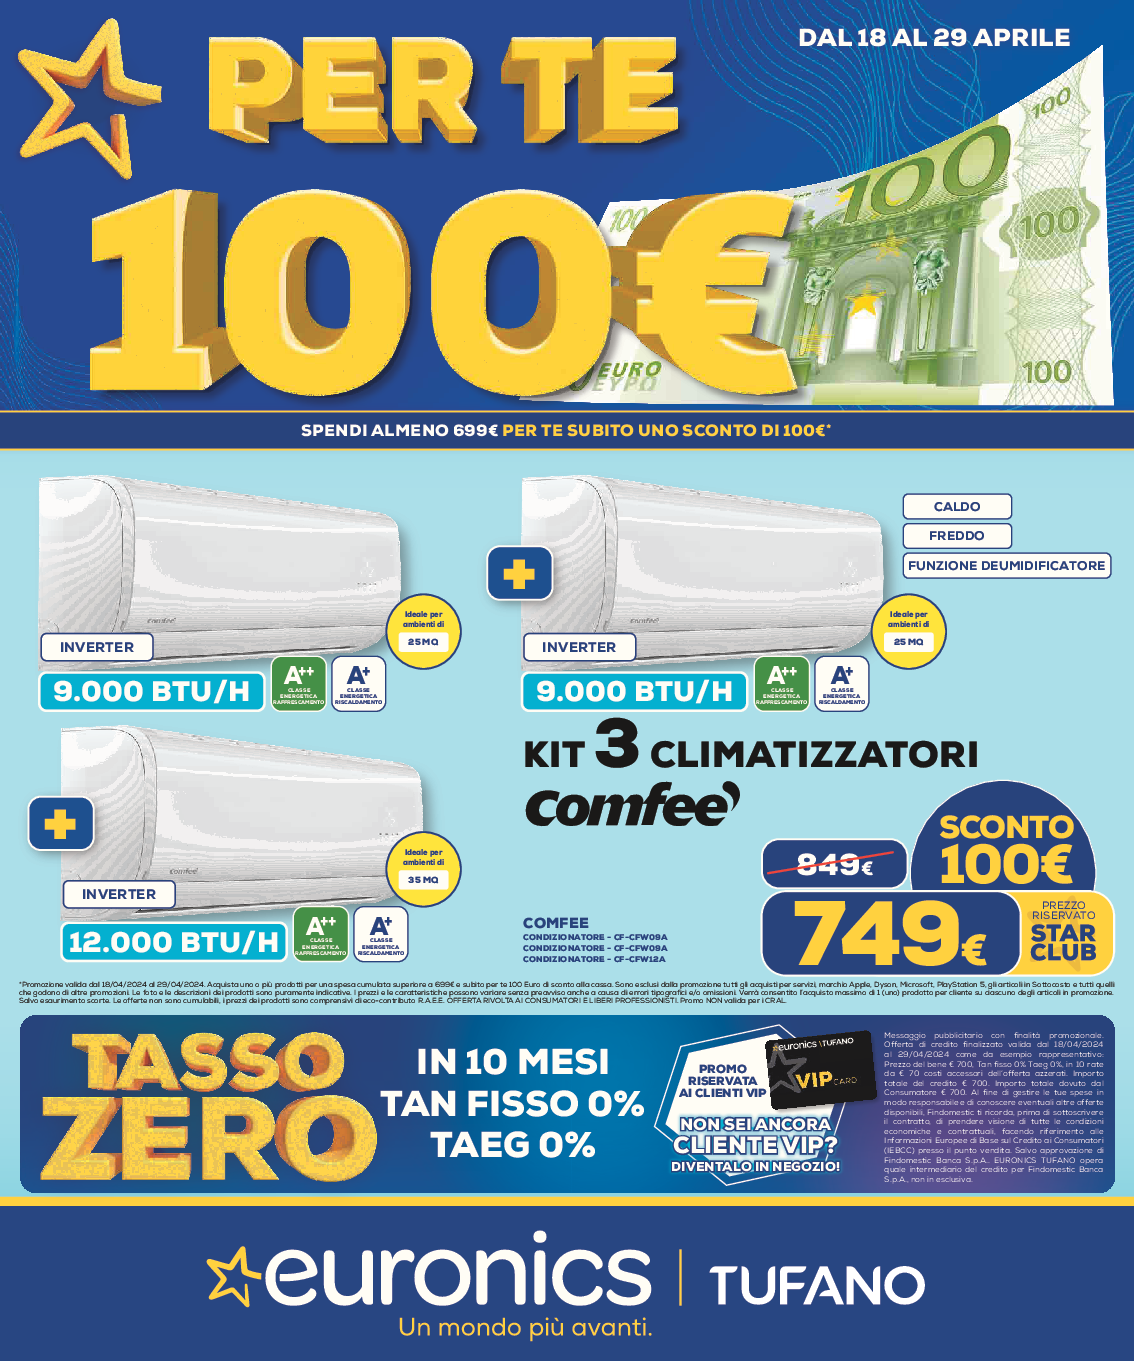 PER TE 100 EURO